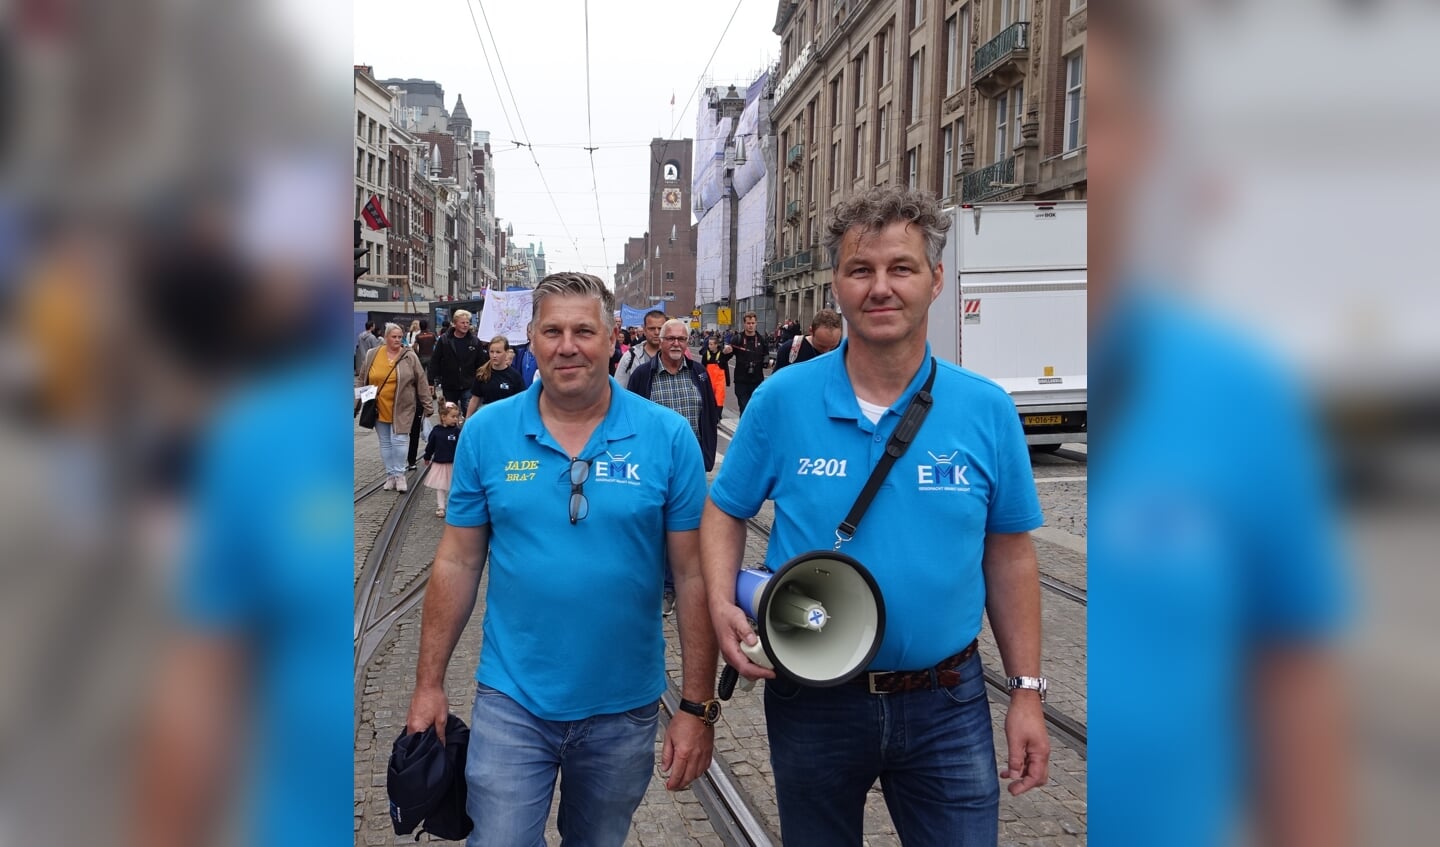 H Job Schot en Dirk Kraak vooraan tijdens de mooie EMK-actie in Amsterdam twee jaar geleden.